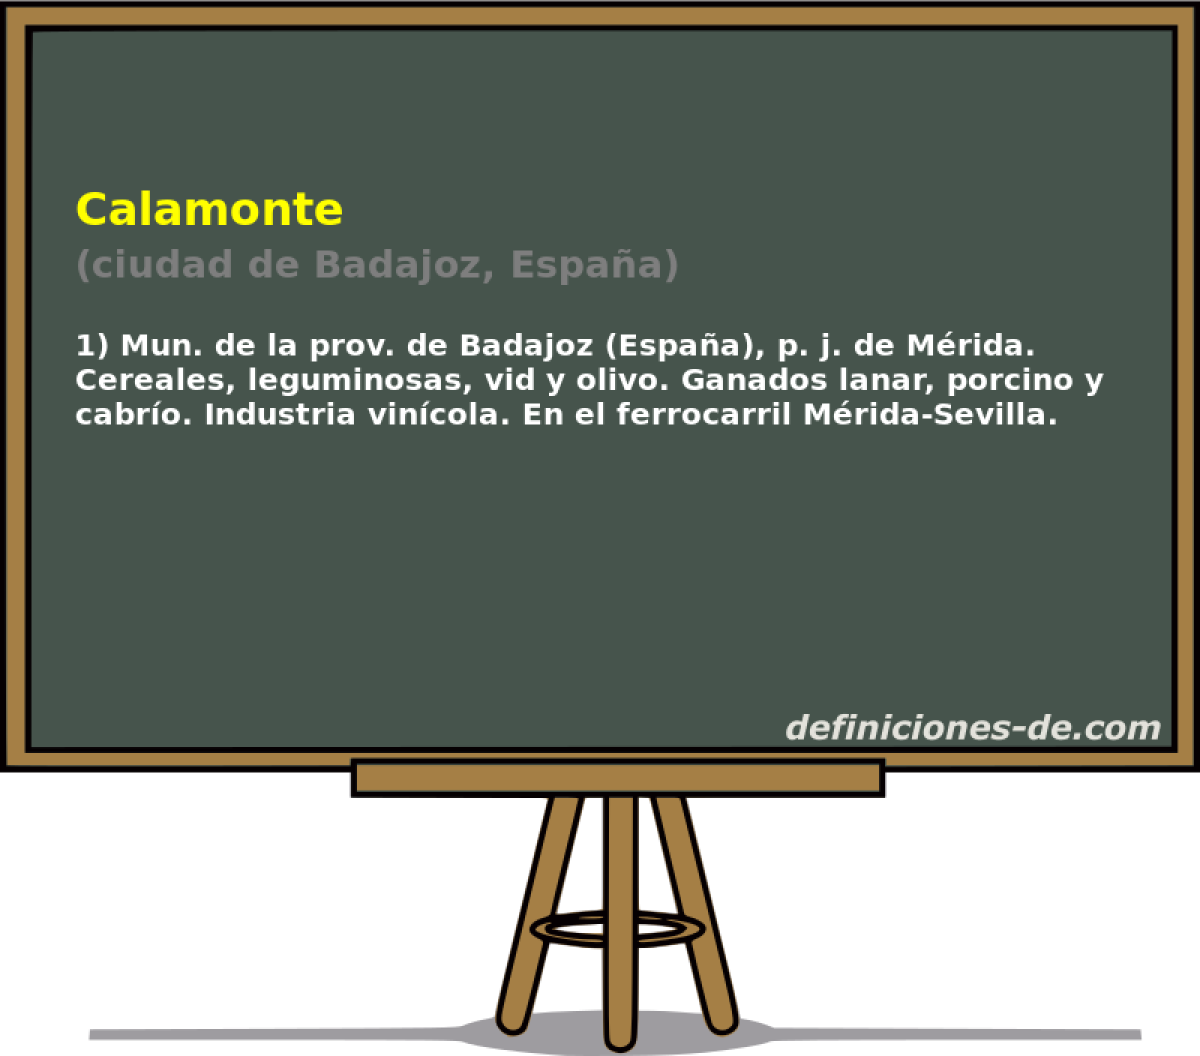 Calamonte (ciudad de Badajoz, Espaa)